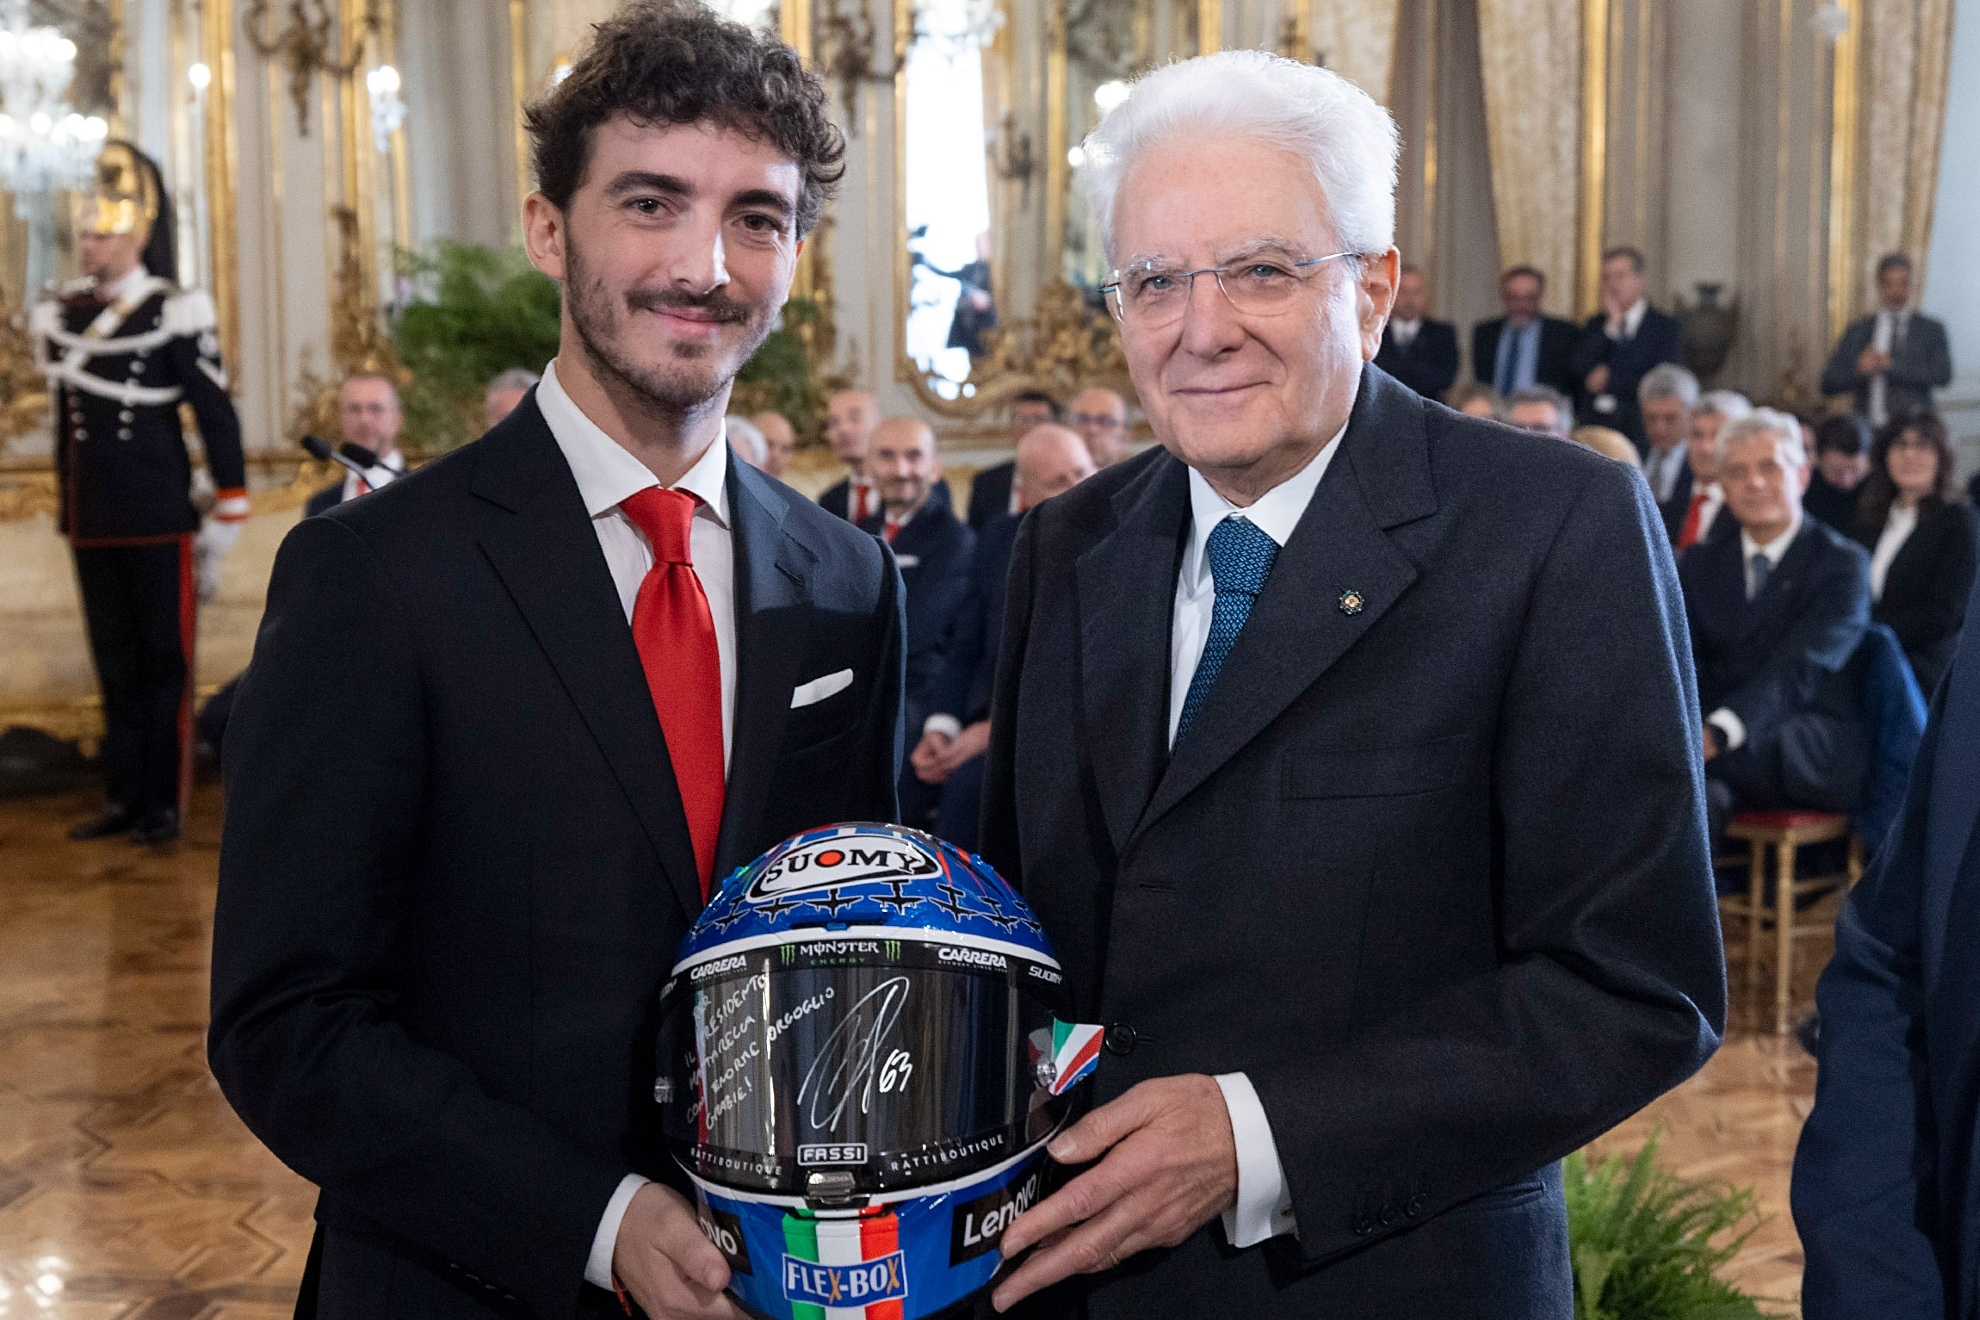 Pecco Bagnaia, campeón de MotoGP 2022, posa junto al presidente de Italia, Sergio Mattarella.